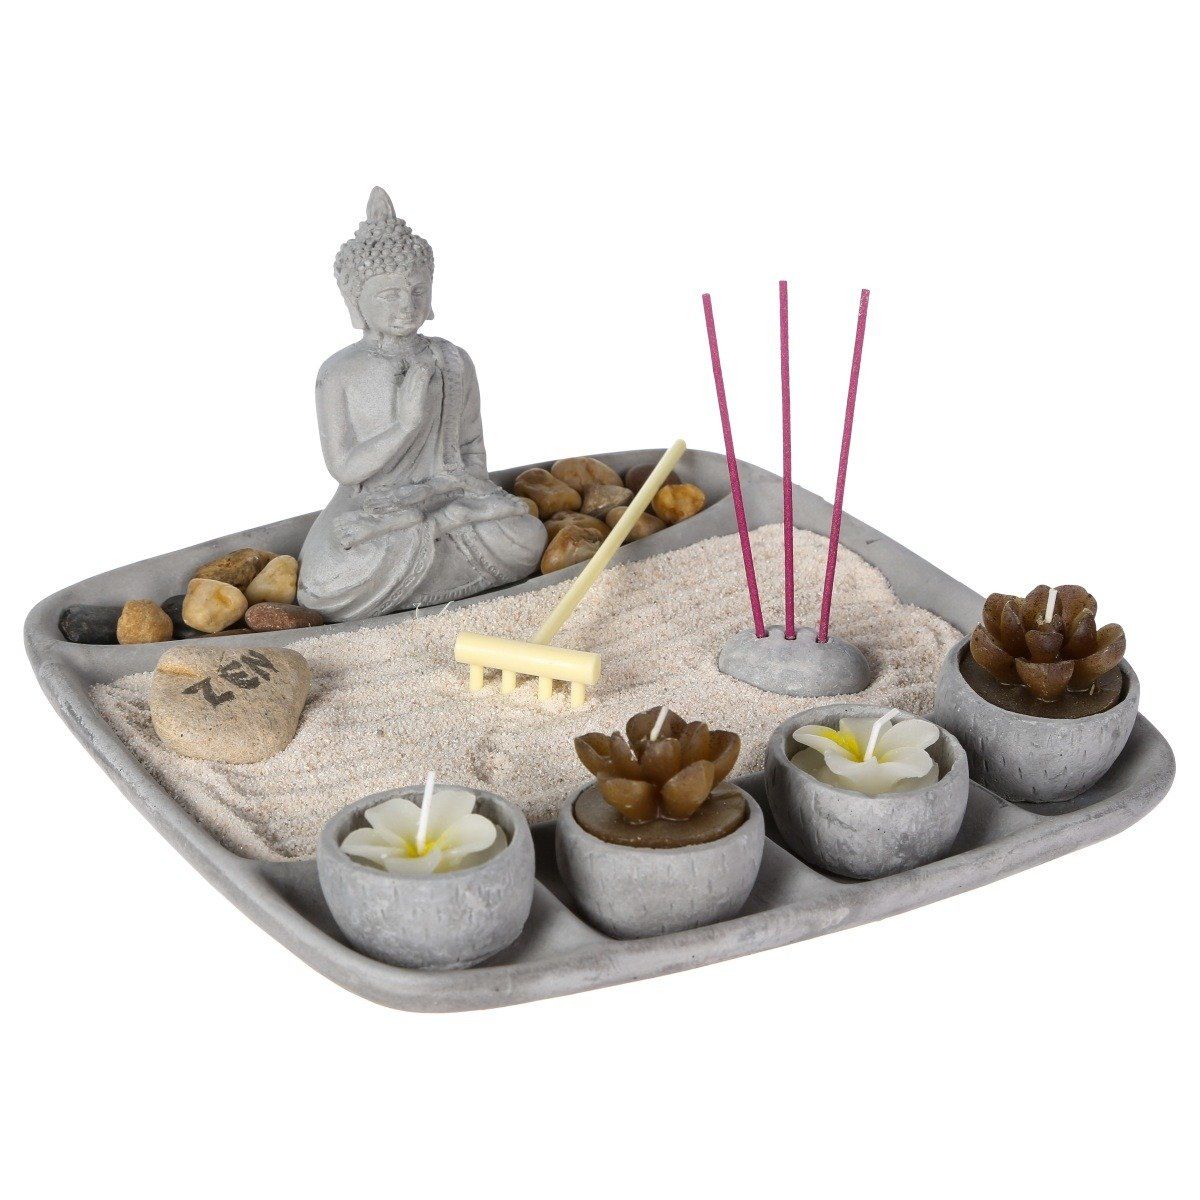 Atmosphera Sada svíček a vonných tyčinek s postavou buddhy, 24 x 23 cm, šedá. - EDAXO.CZ s.r.o.